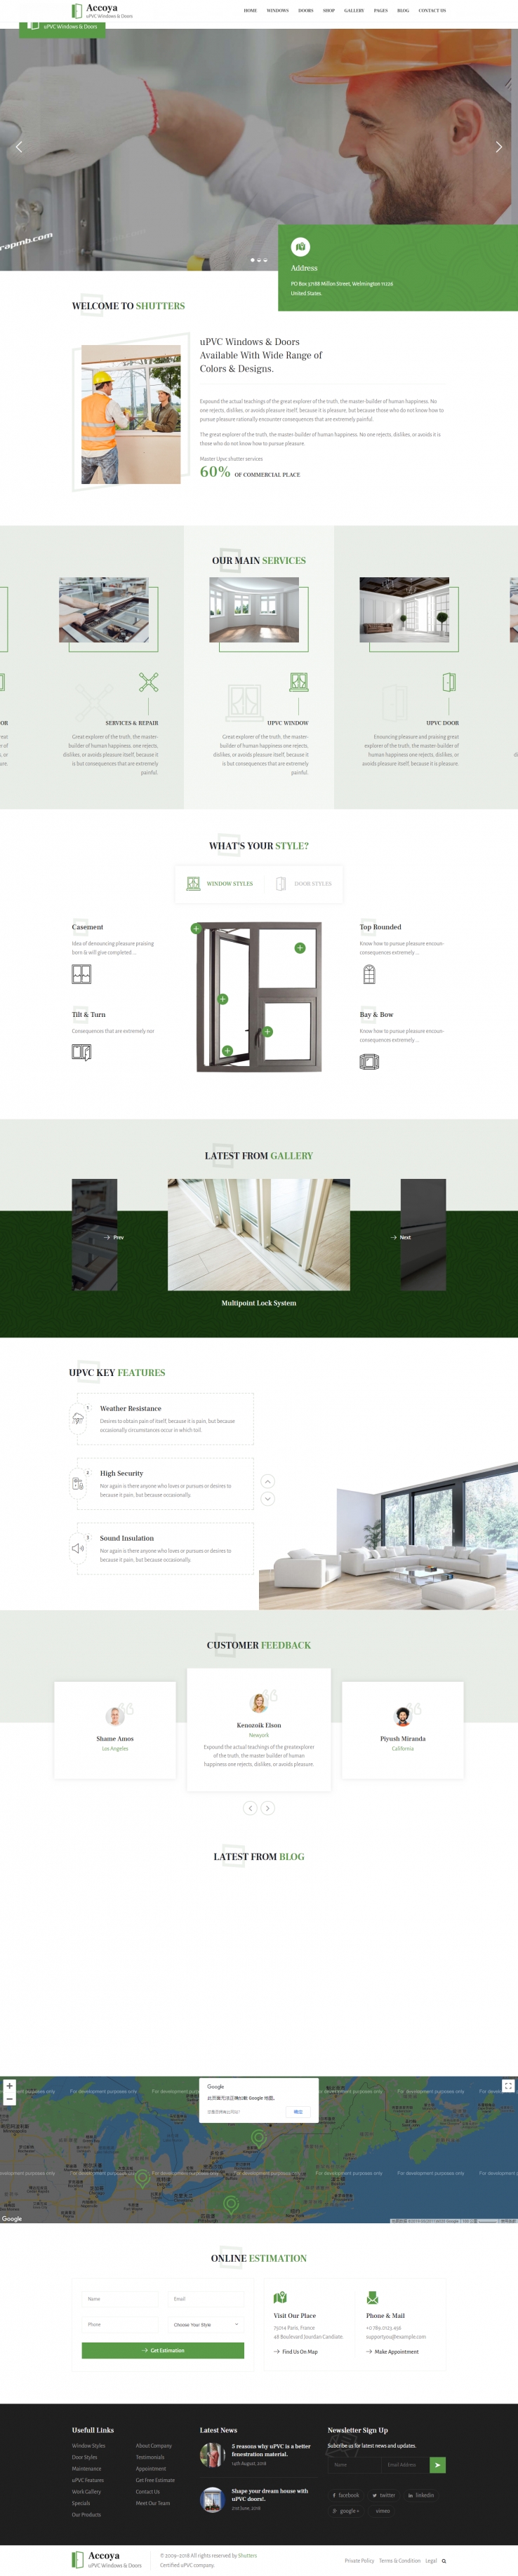 绿色简洁风格的门窗保洁服务企业网站源码下载